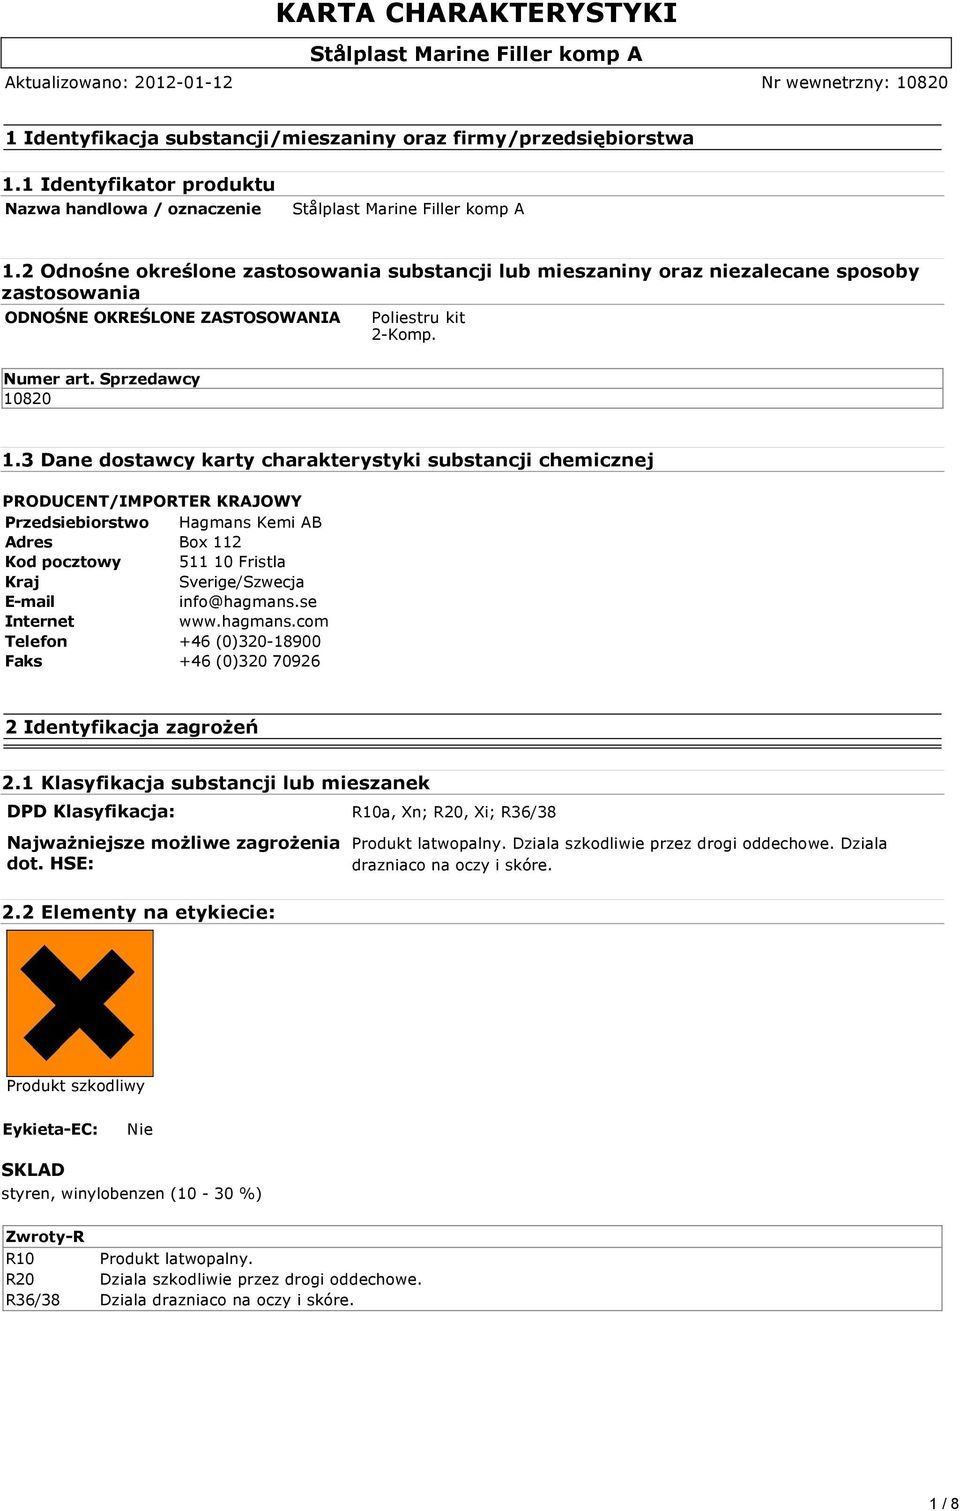 3 Dane dostawcy karty charakterystyki substancji chemicznej PRODUCENT/IMPORTER KRAJOWY Przedsiebiorstwo Hagmans Kemi AB Adres Box 112 Kod pocztowy 511 10 Fristla Kraj Sverige/Szwecja E-mail